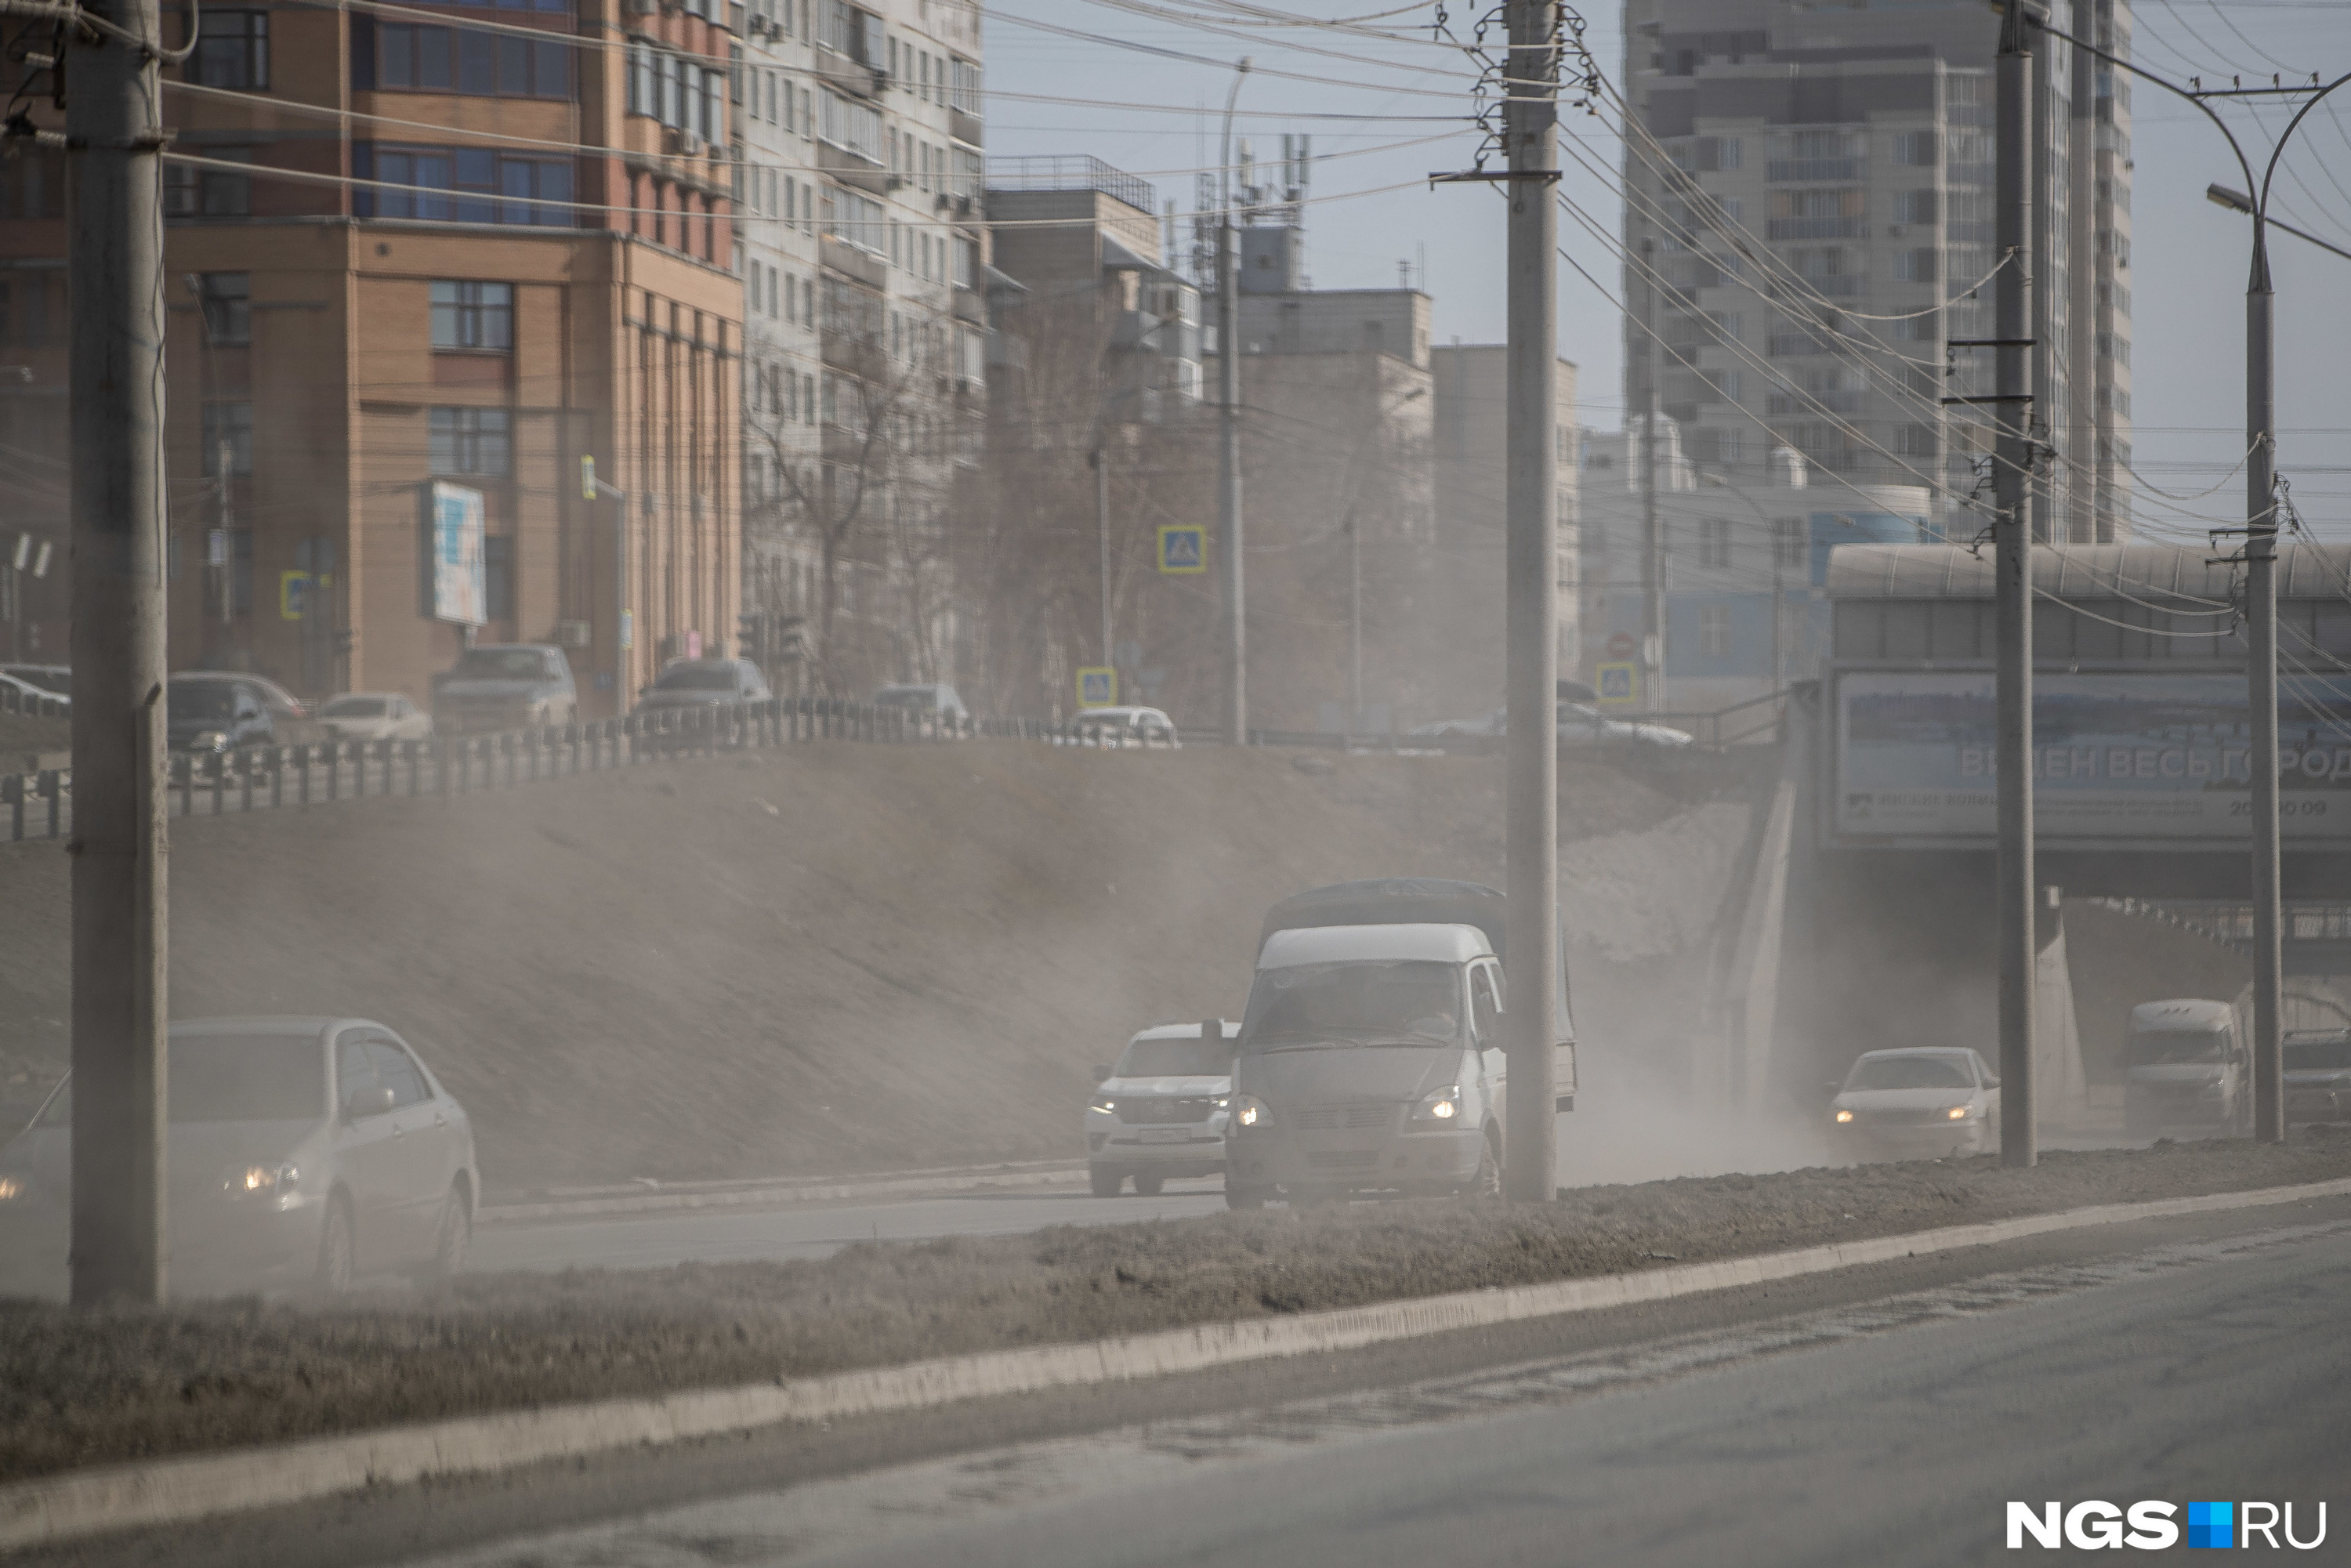 Вот кадр из центра города — дорога утопает в клубах пыли